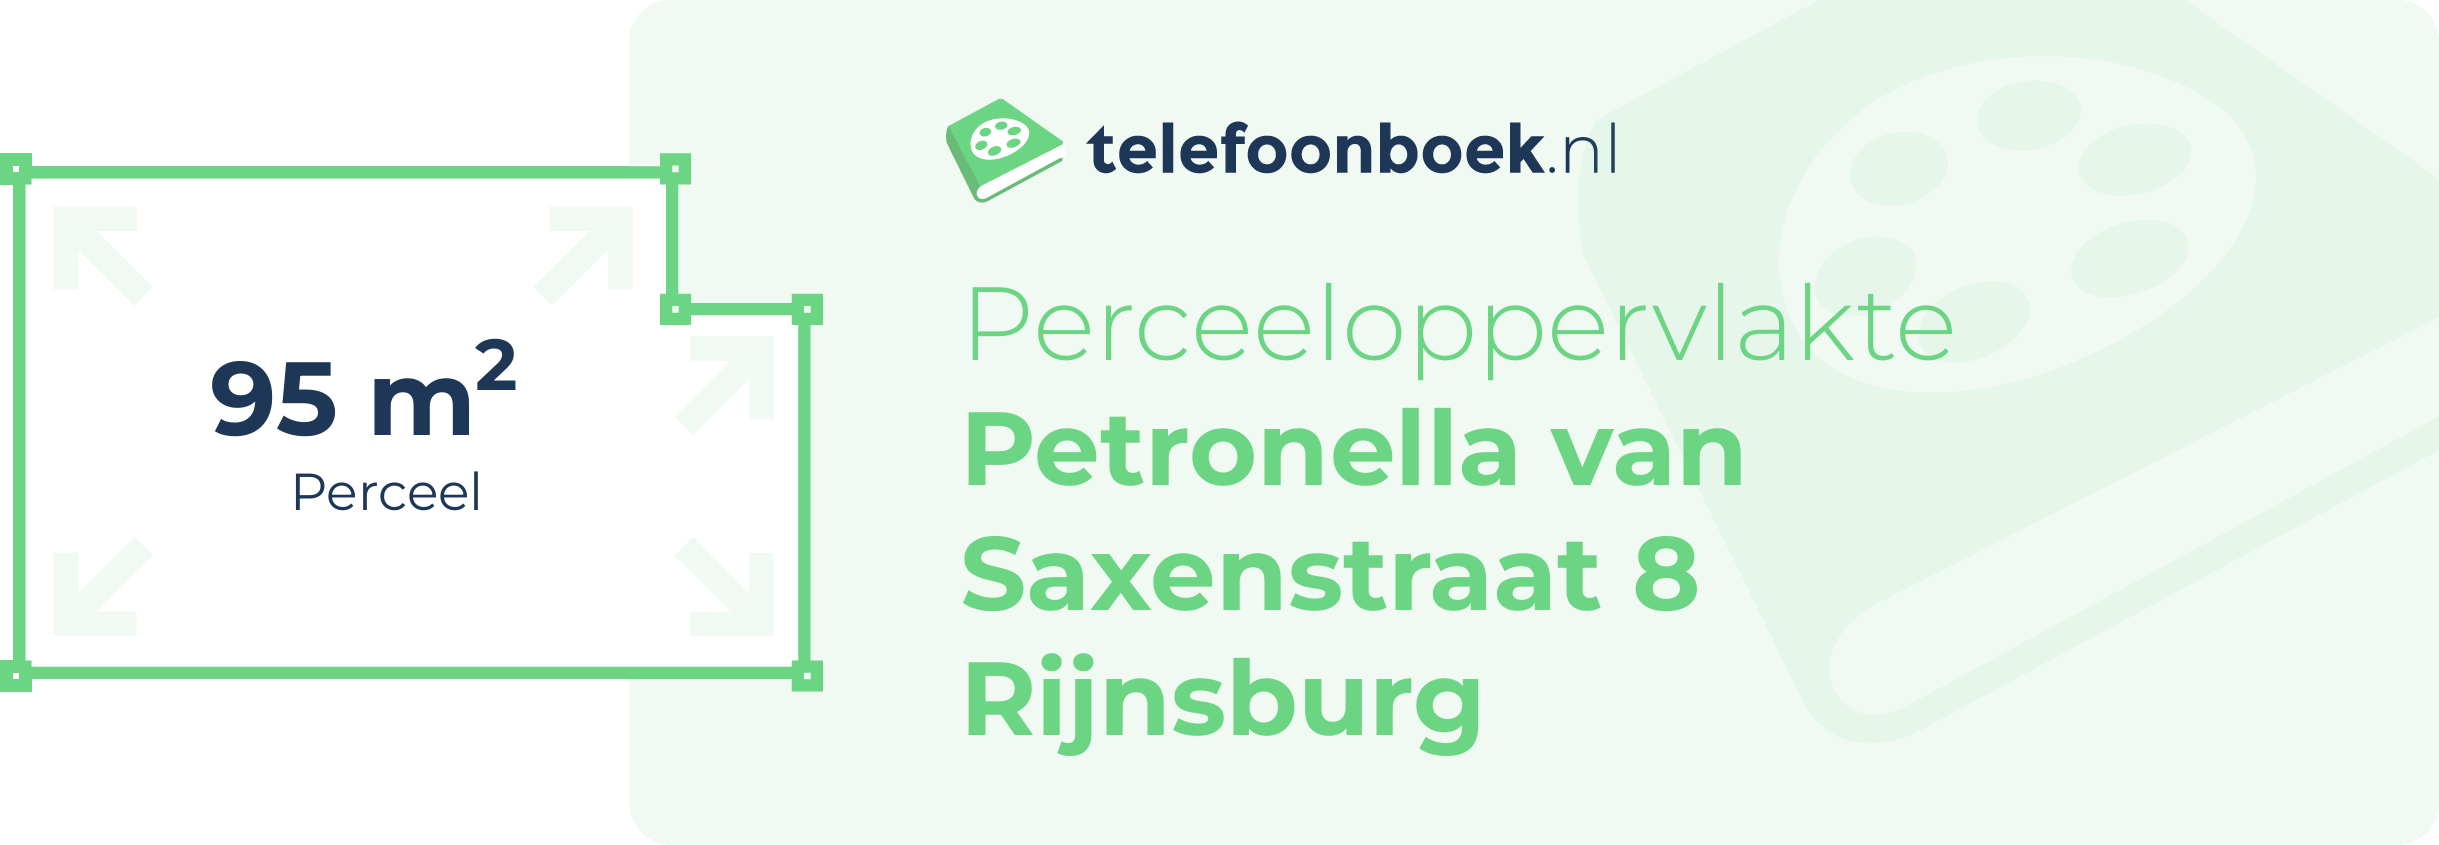 Perceeloppervlakte Petronella Van Saxenstraat 8 Rijnsburg